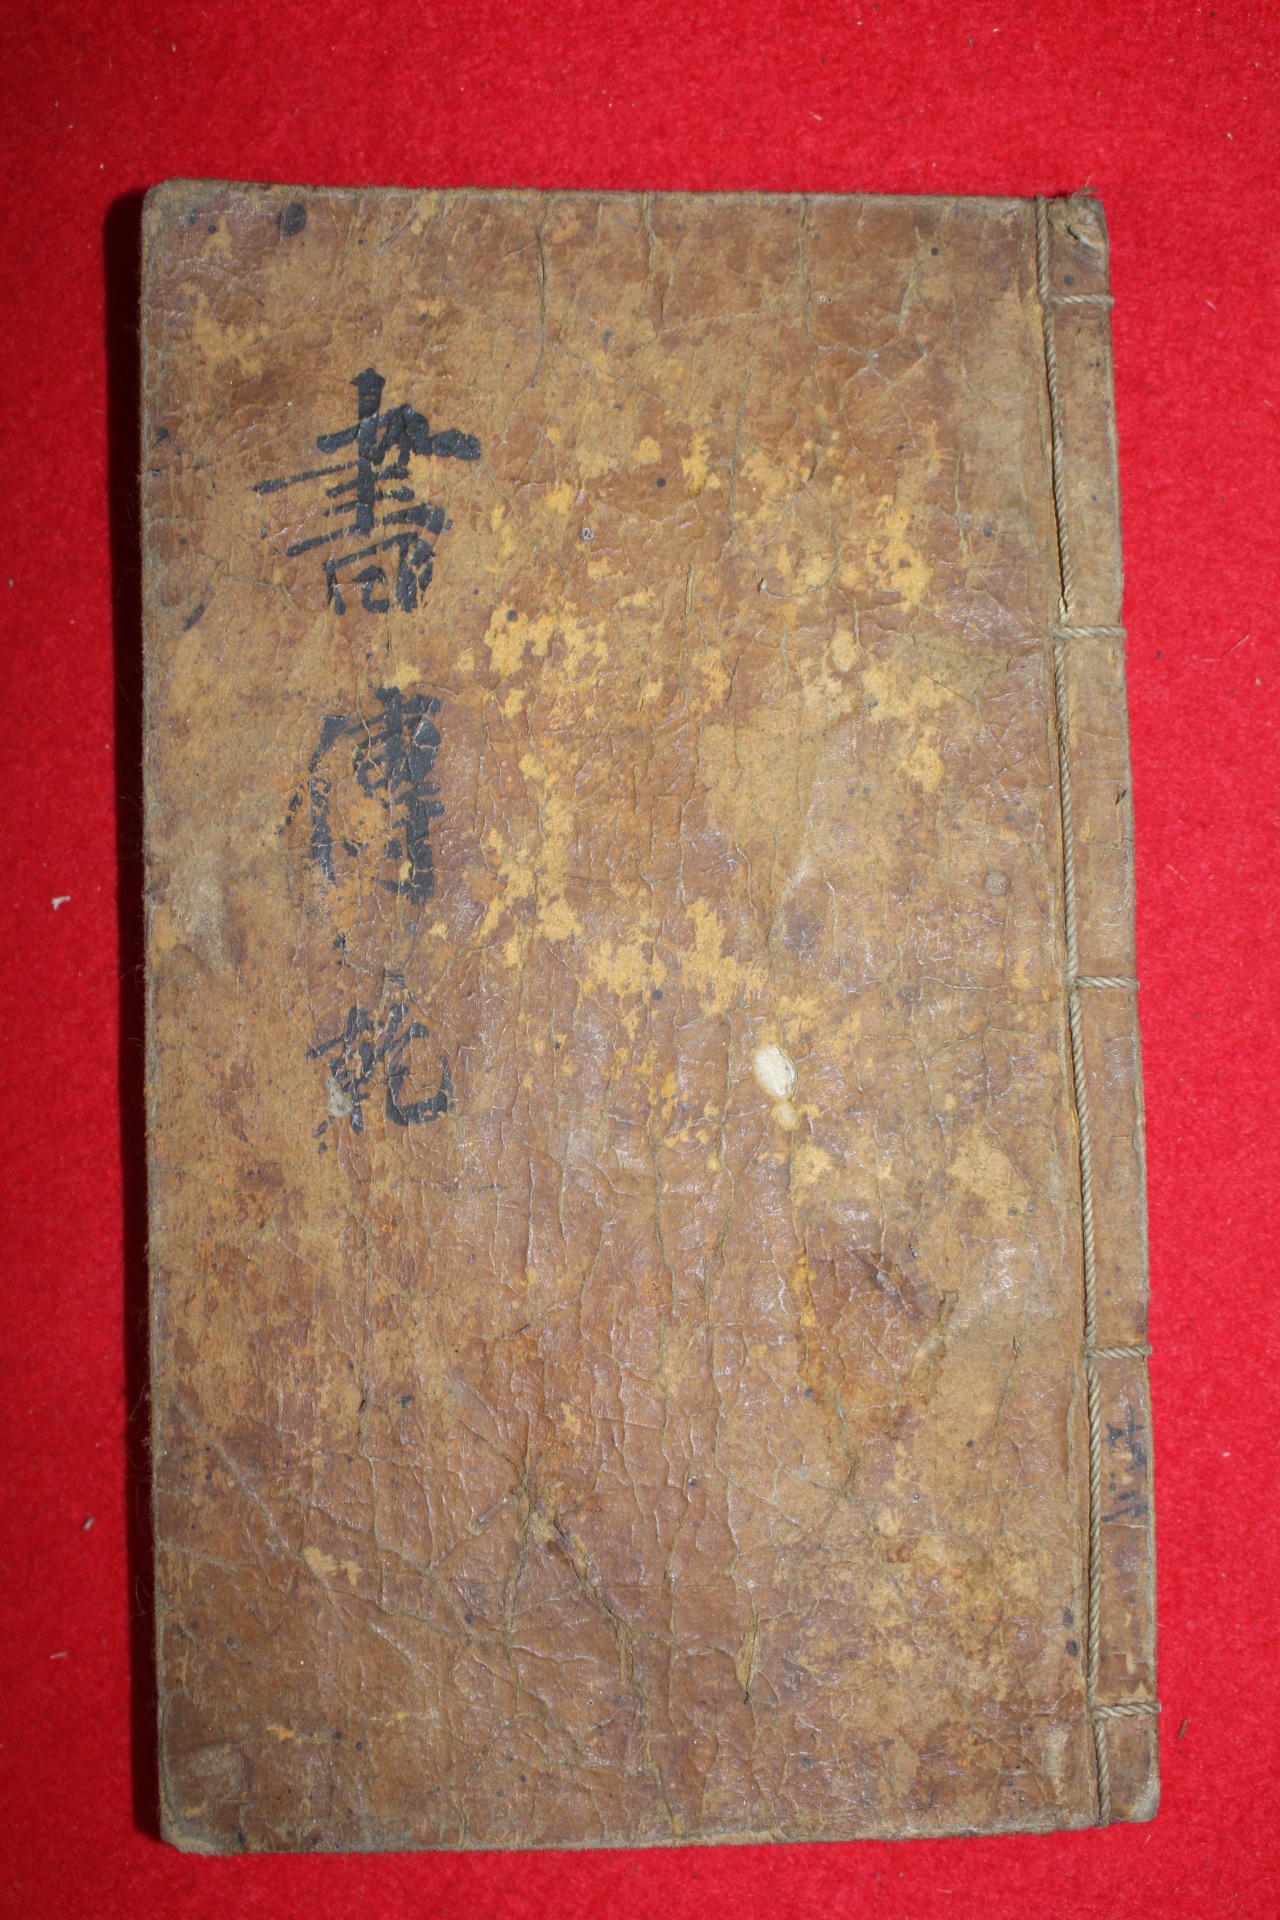 조선시대 아주잘정서된 수진고필사본 서전(書傳)권1~6  1책